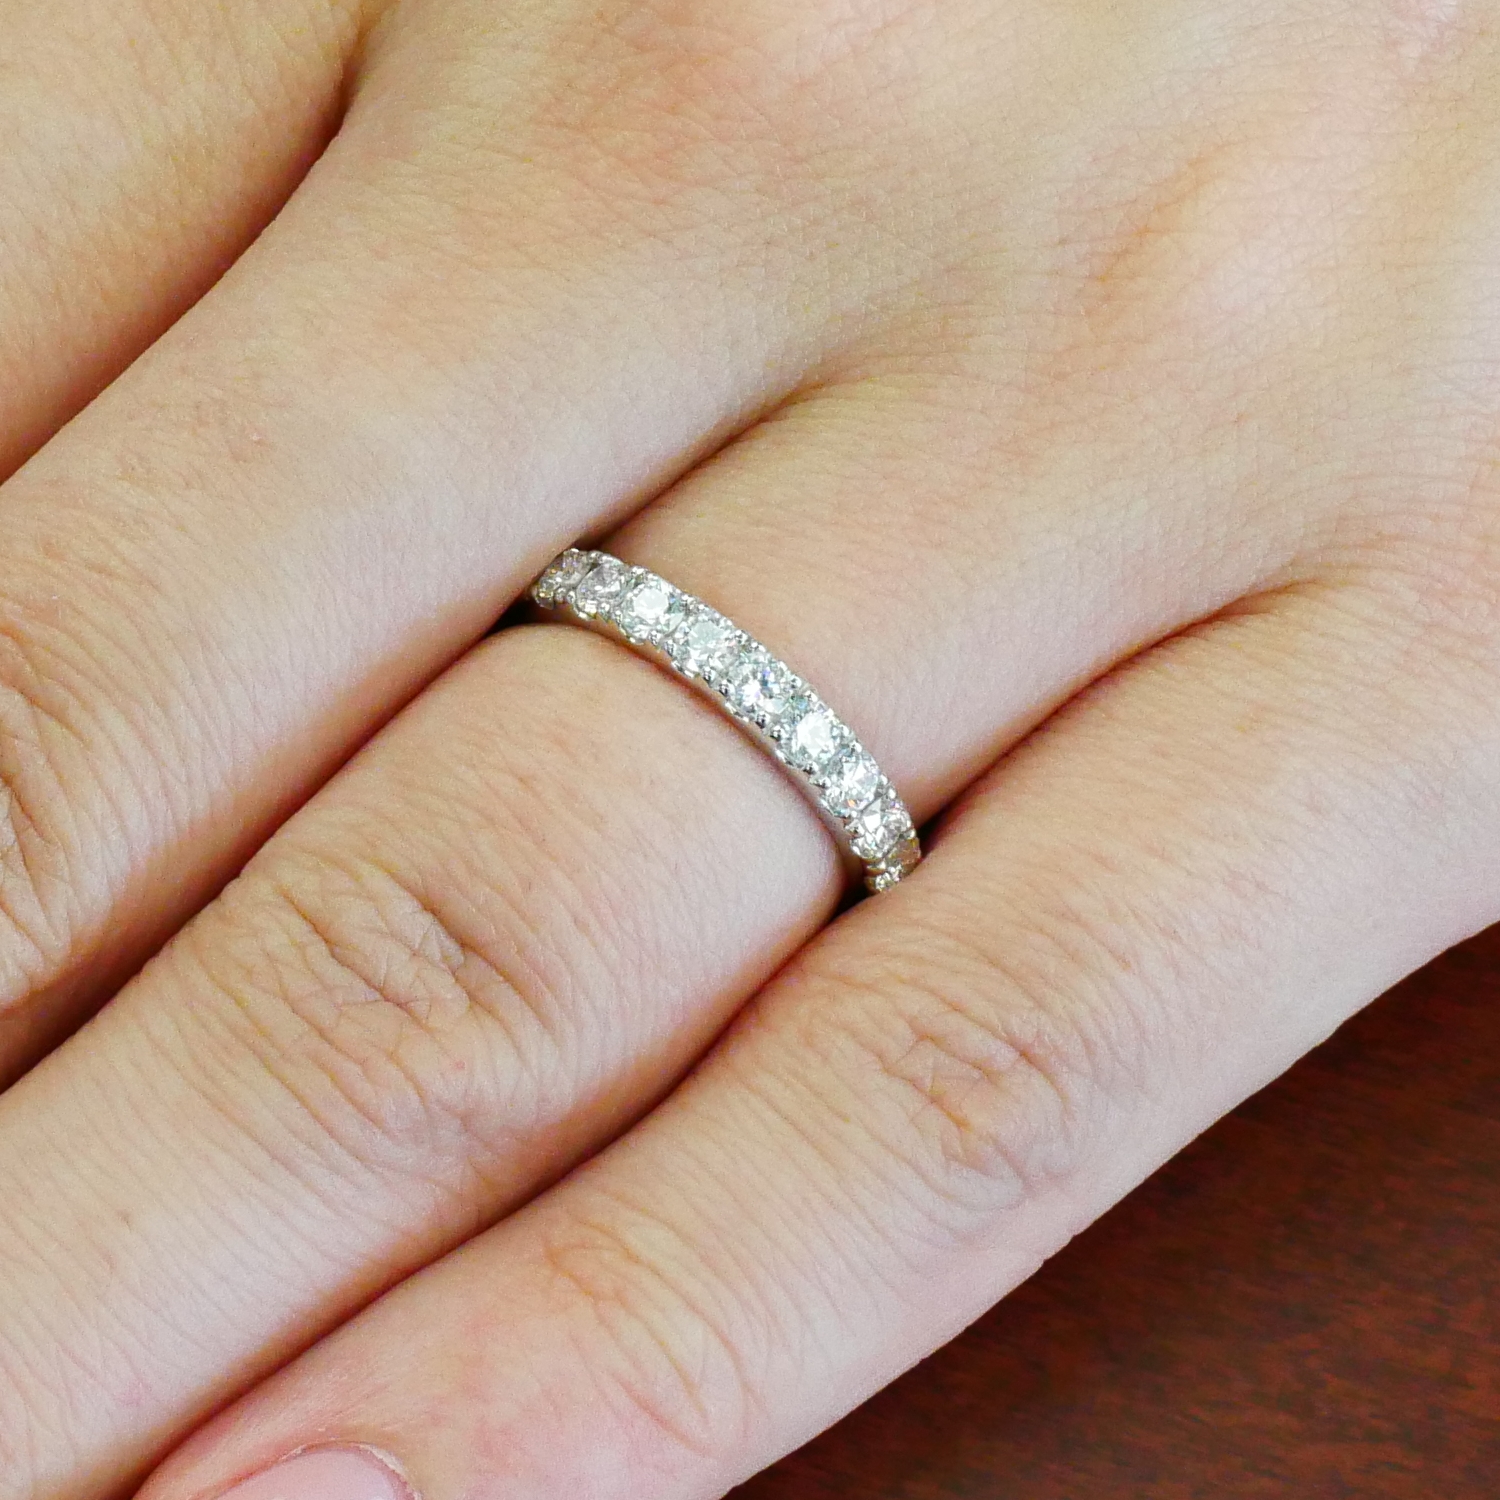 エタニティリング 爪留め 40代の方の結婚指輪に | エタニティリング 